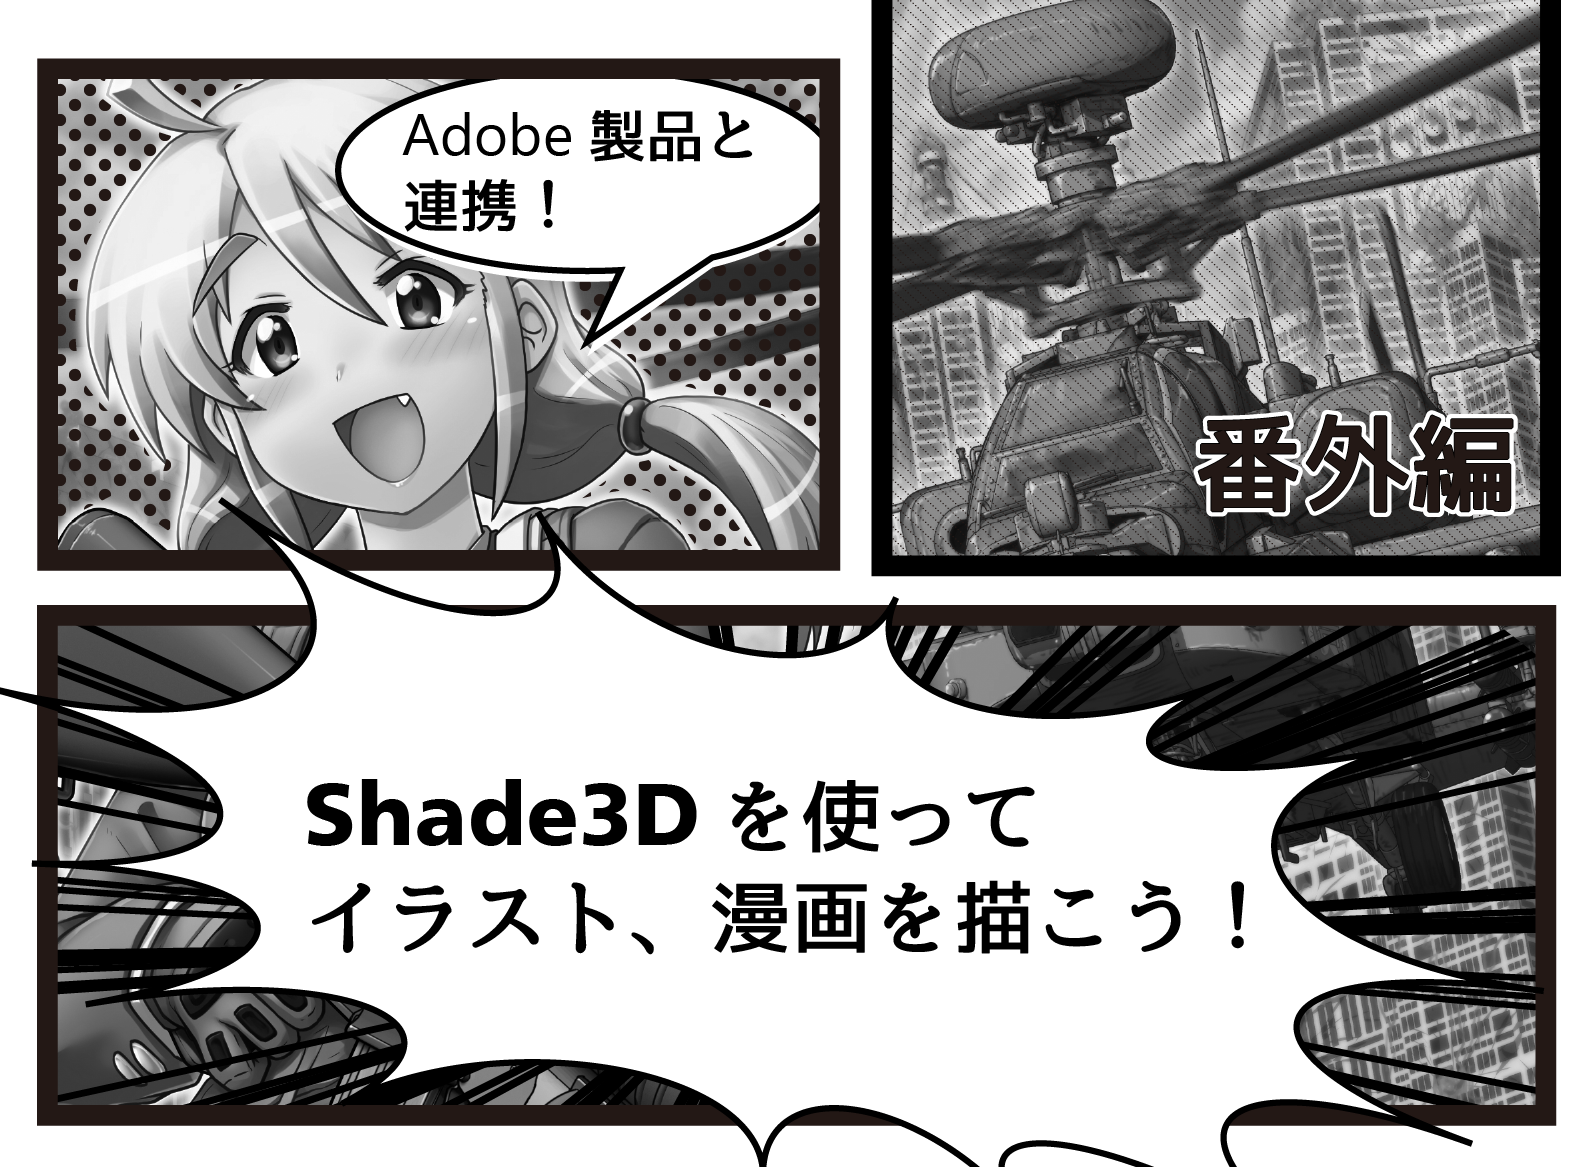 Shade3d 公式 Adobe製品と連携 番外編 Shade3dを使ってイラスト 漫画を描こう